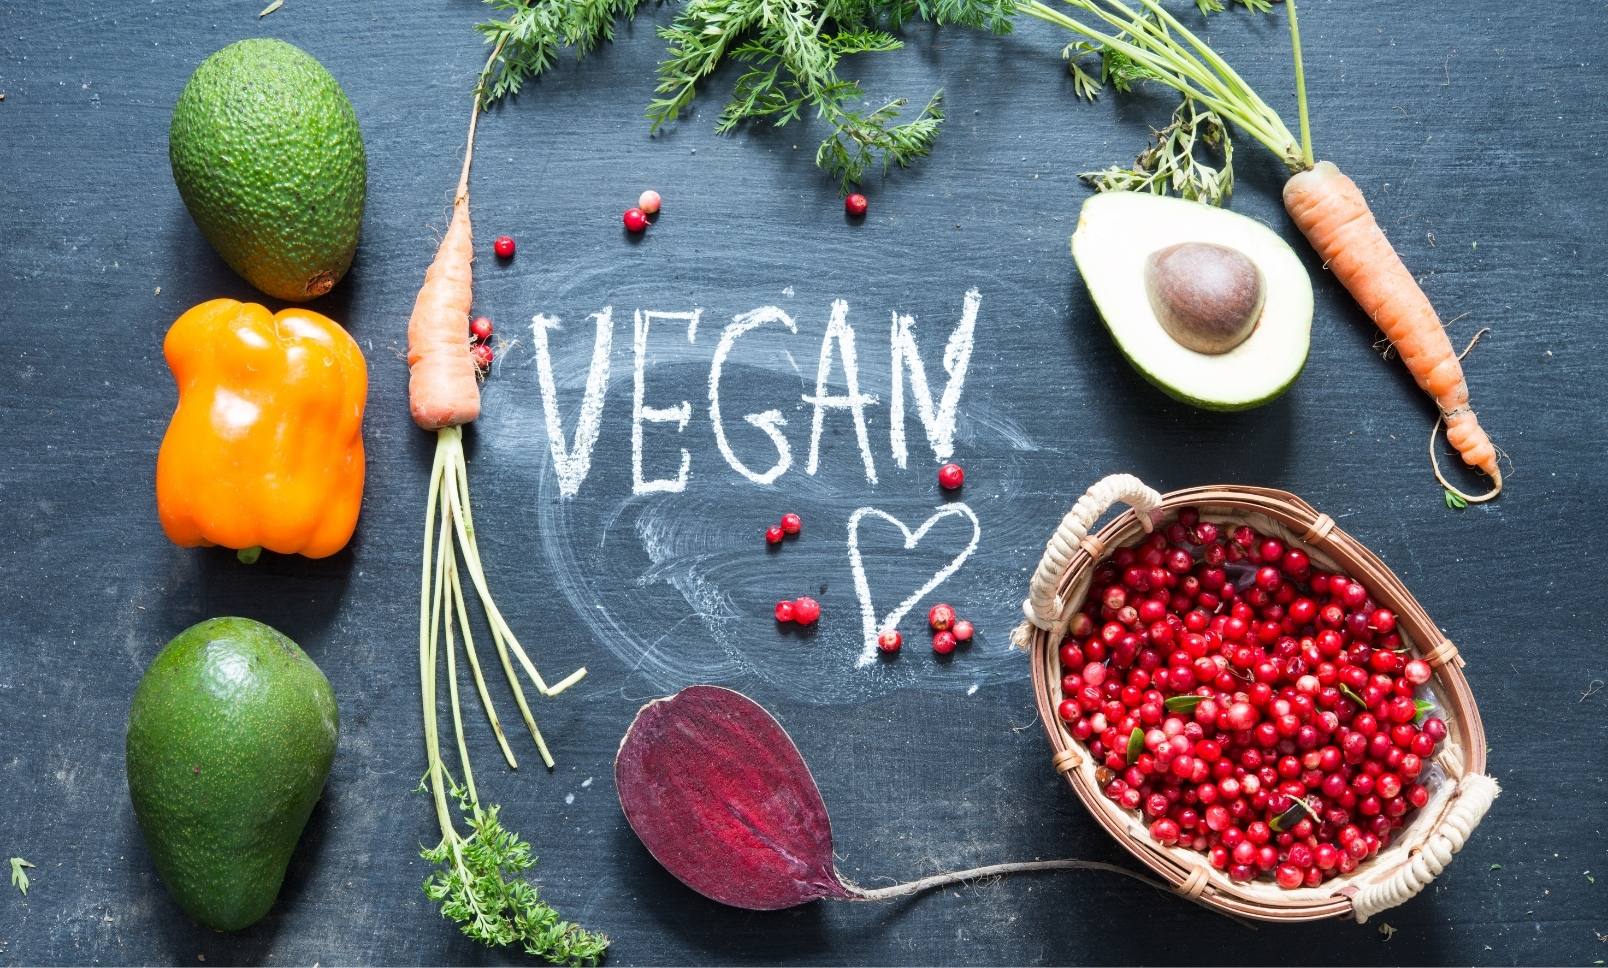 benefits of going vegan